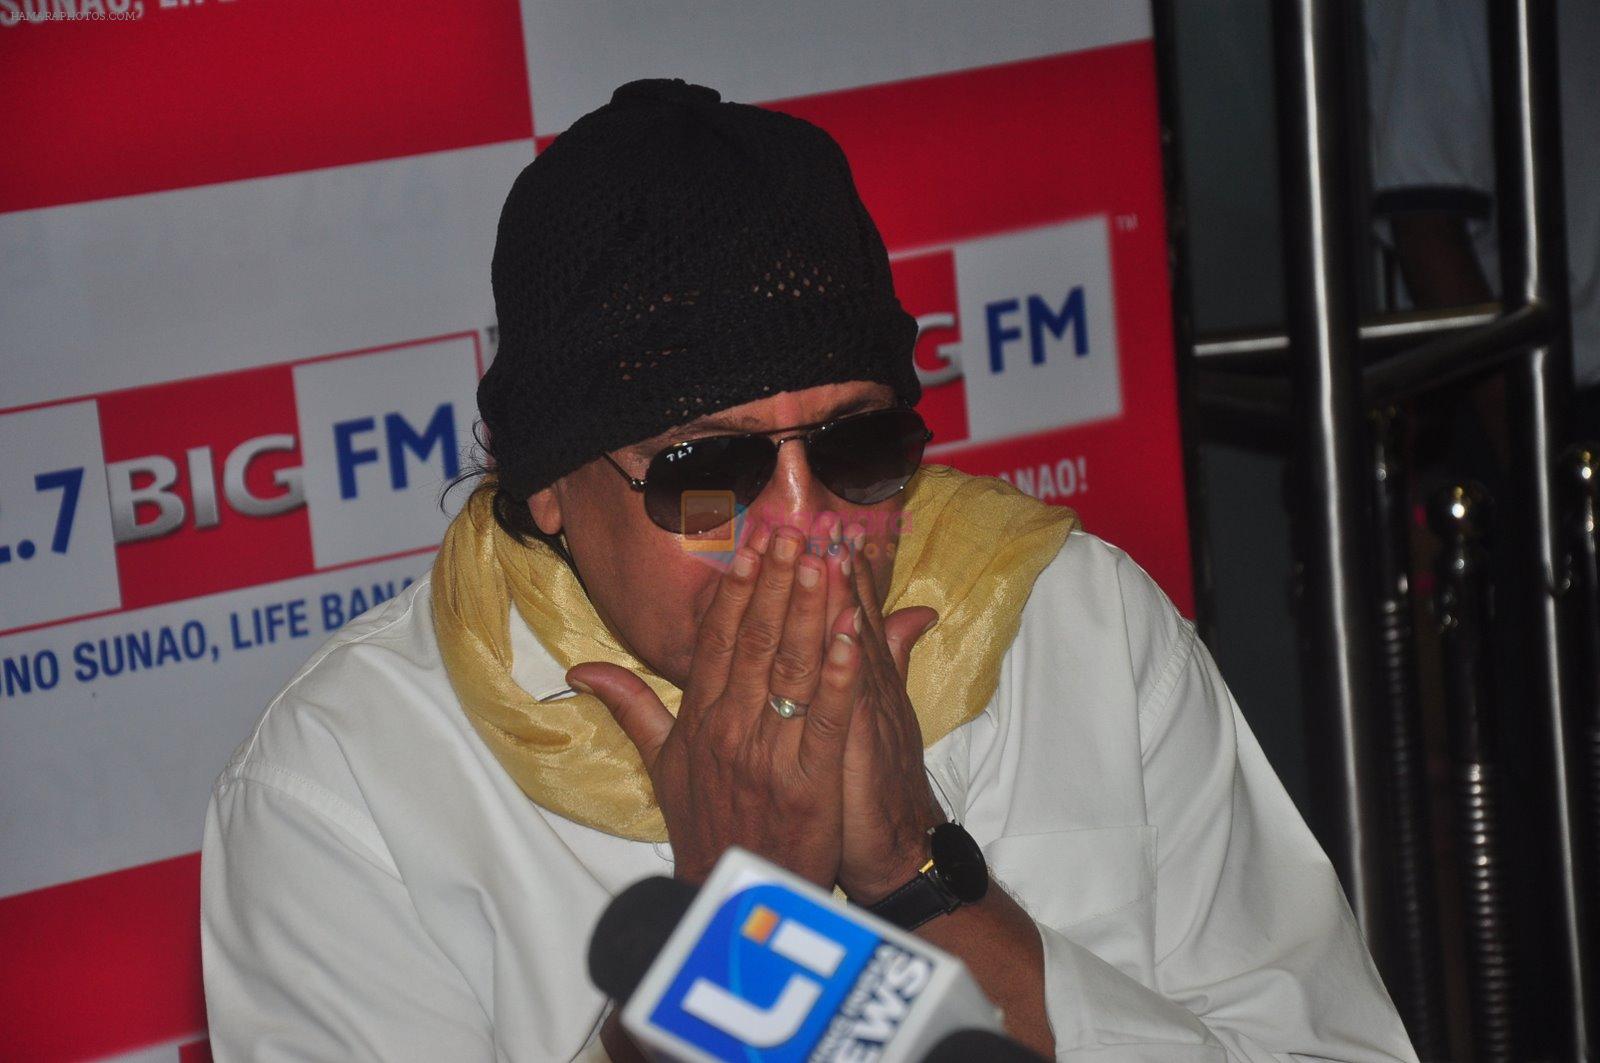 Mithun Chakraborty at Big FM in Mumbai on 3rd Feb 2015